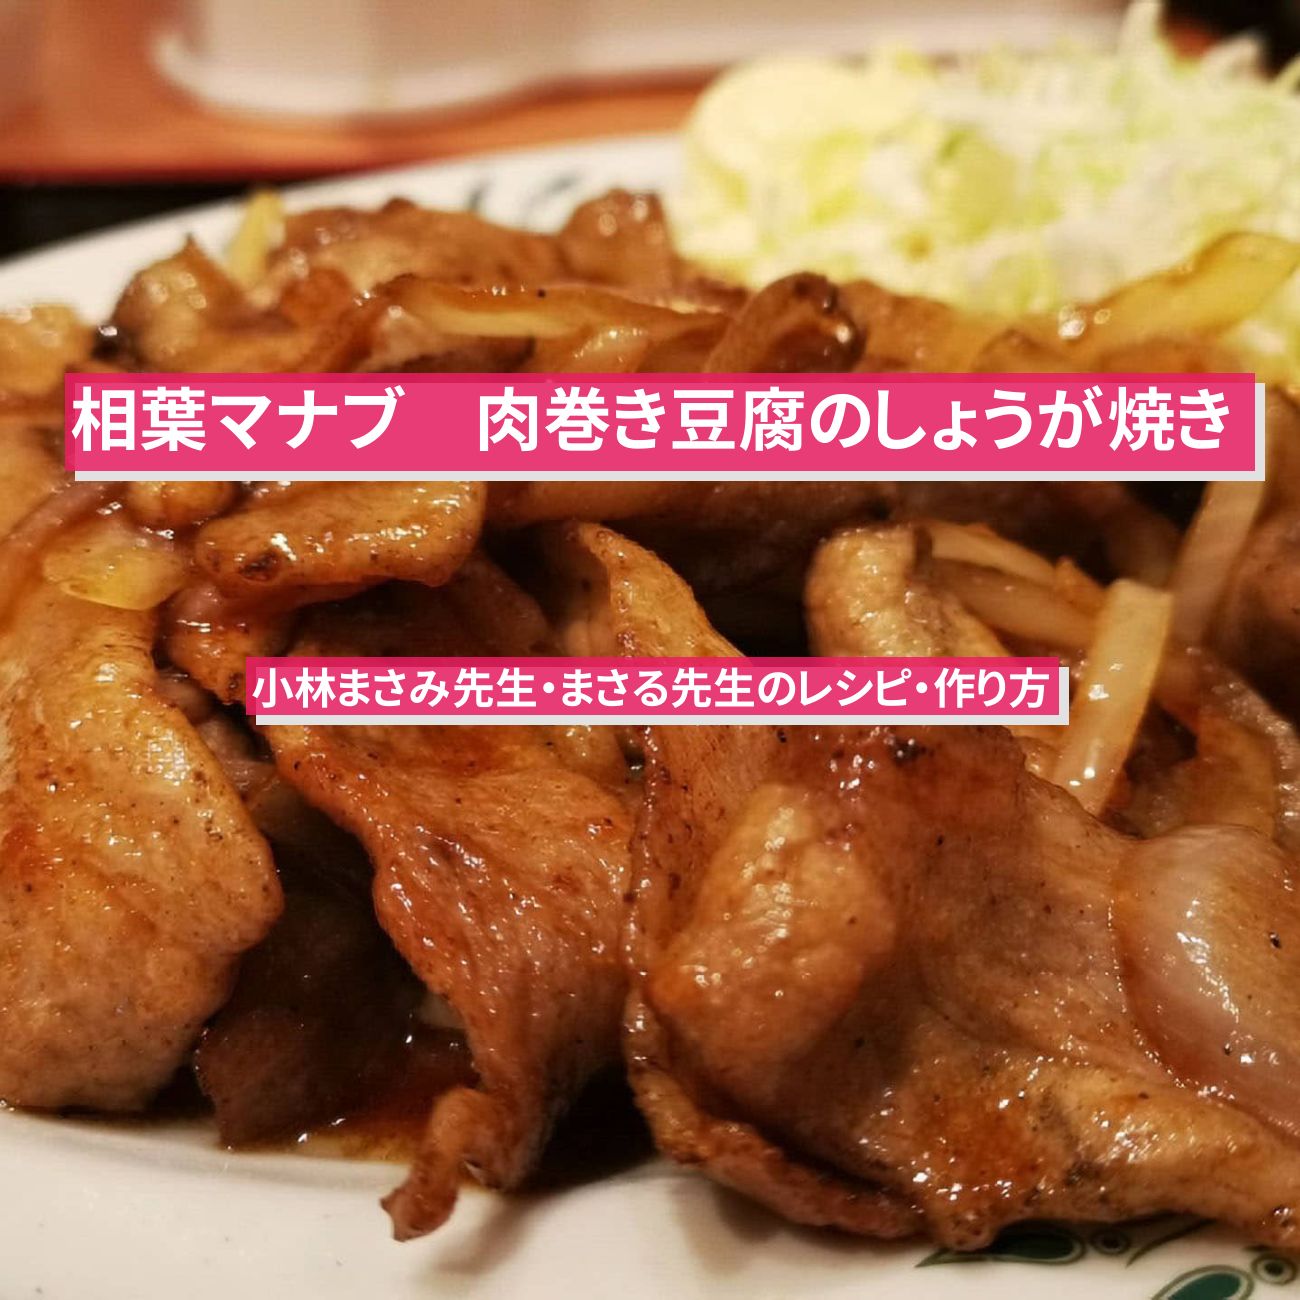 【相葉マナブ】『肉巻き豆腐のしょうが焼き』小林まさみ先生・まさる先生のレシピ・作り方